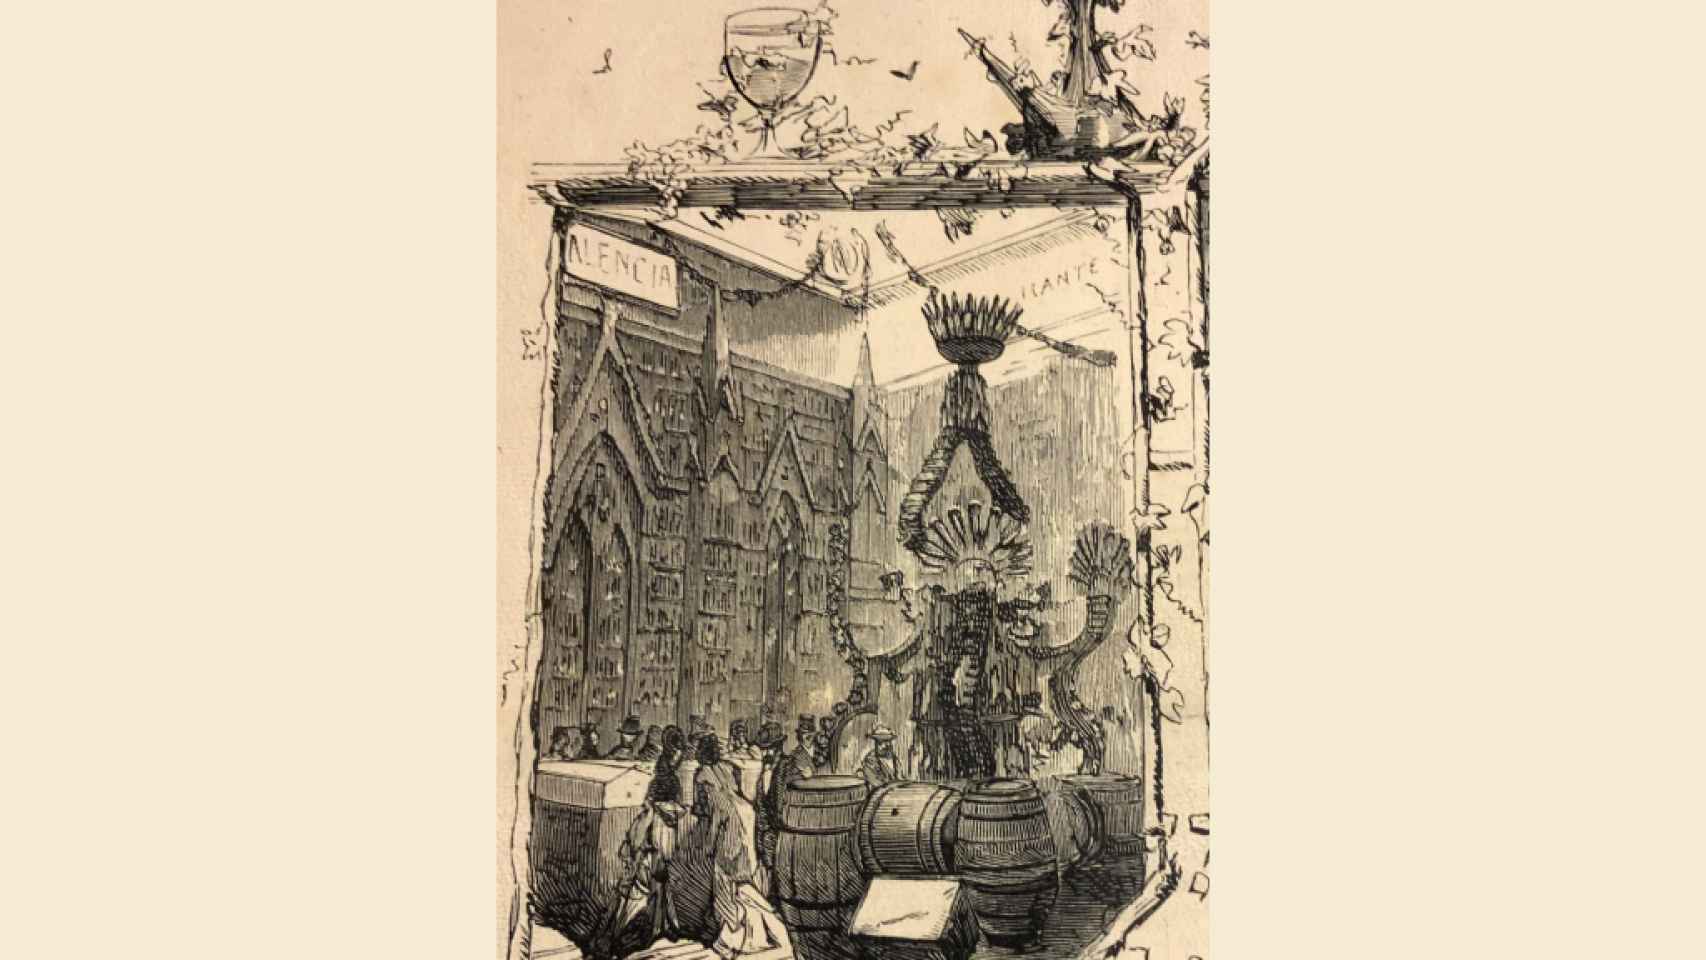 Detalle del expositor de vinos alicantinos de la familia Maisonnave en la Exposición Vinícola de 1877.